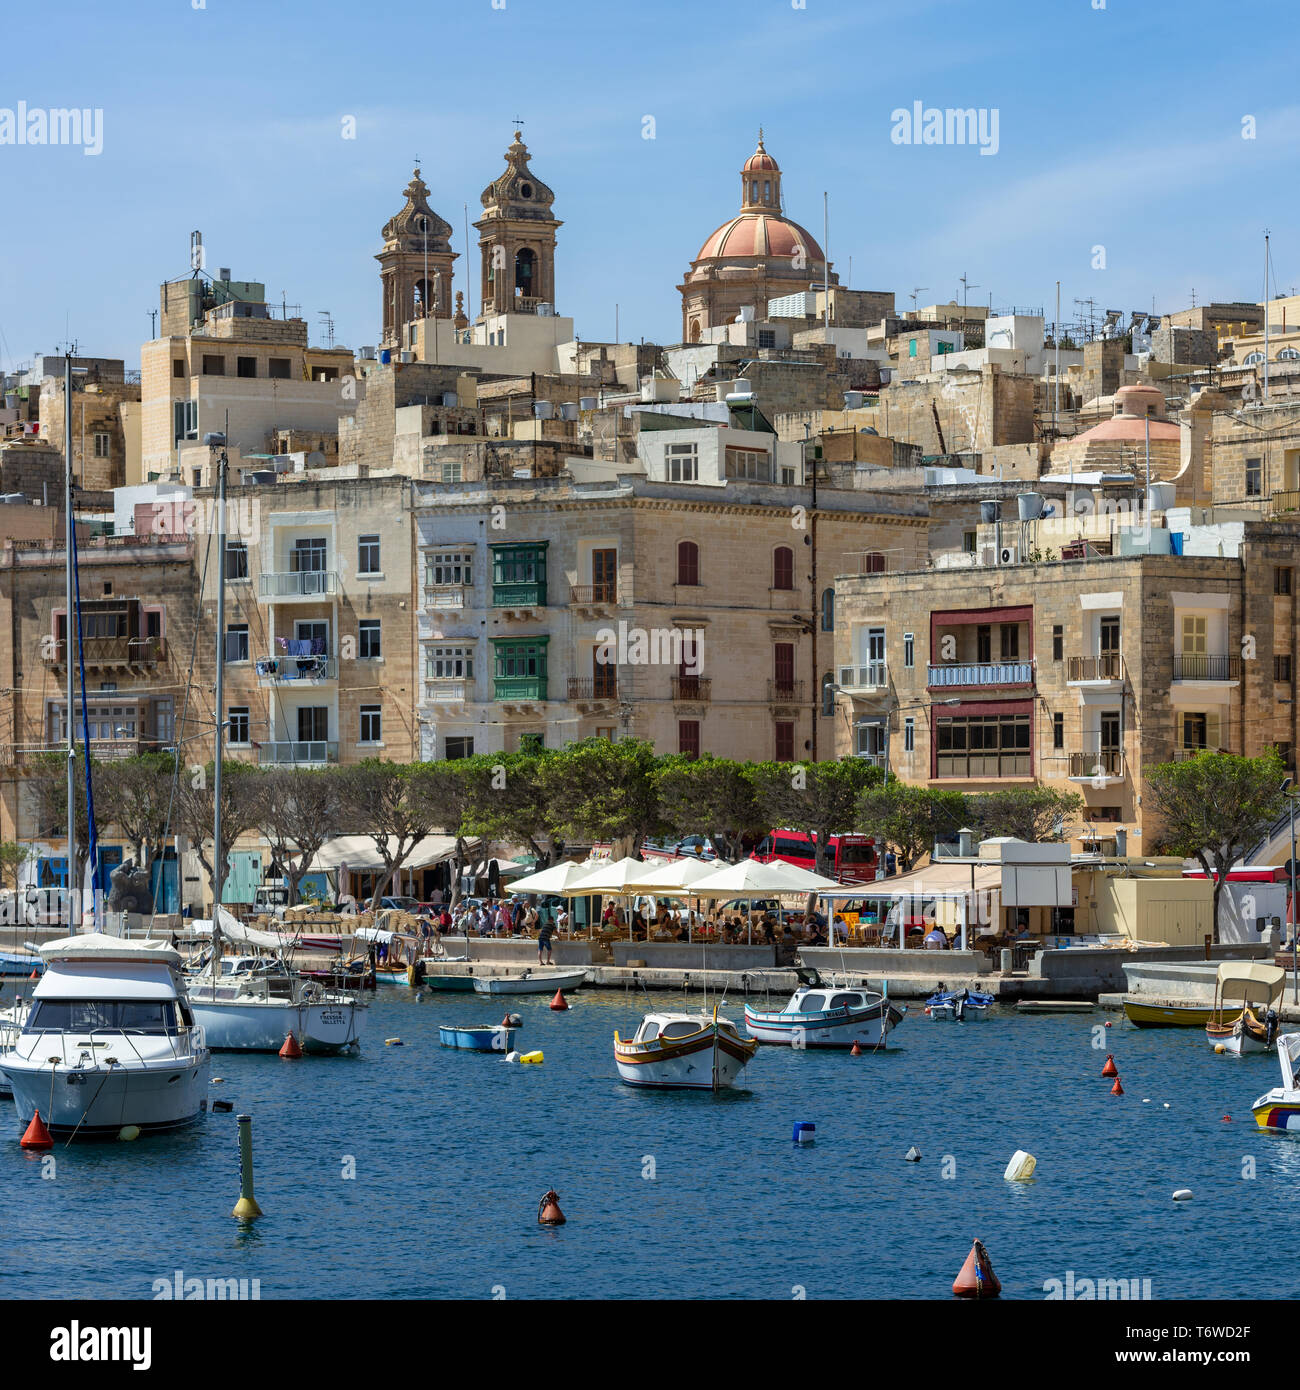 Il lungomare alberato di Senglea a Malta, con i suoi storici edifici calcarei che conducono ai doppi campanili e alla cupola della Basilica di Senglea Foto Stock